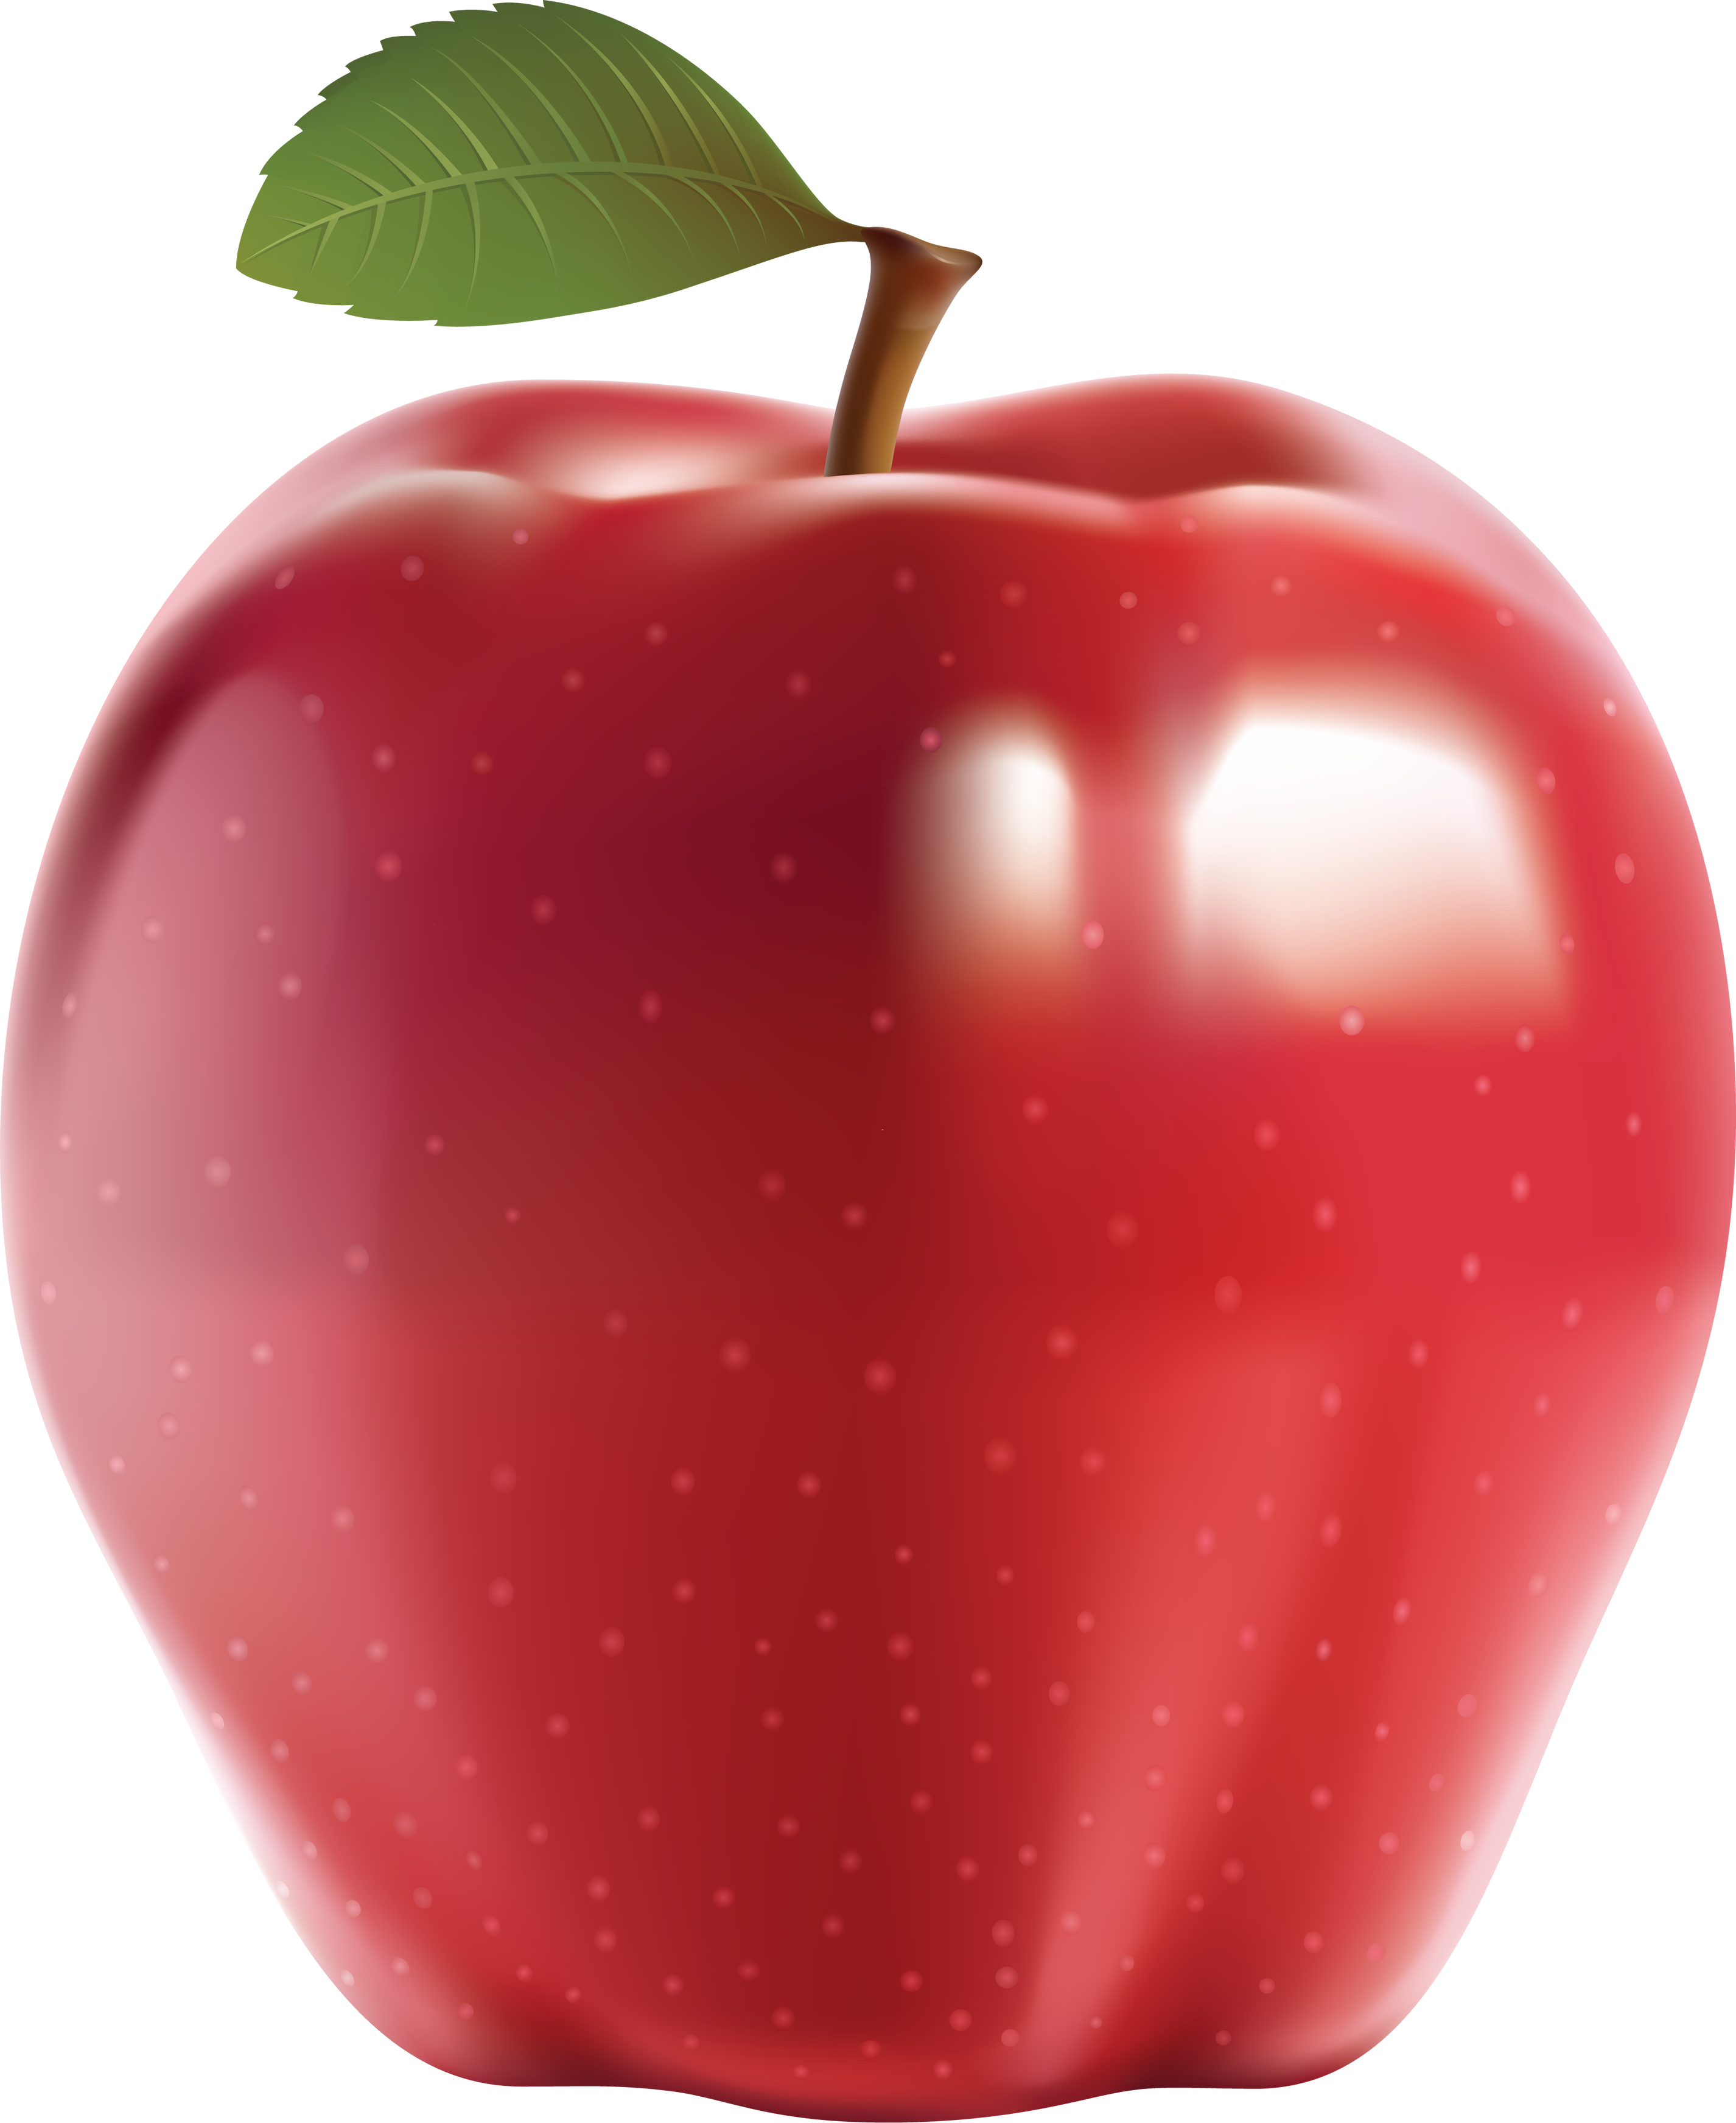 Priorità bassa della immagine del PNG della frutta della mela rossa